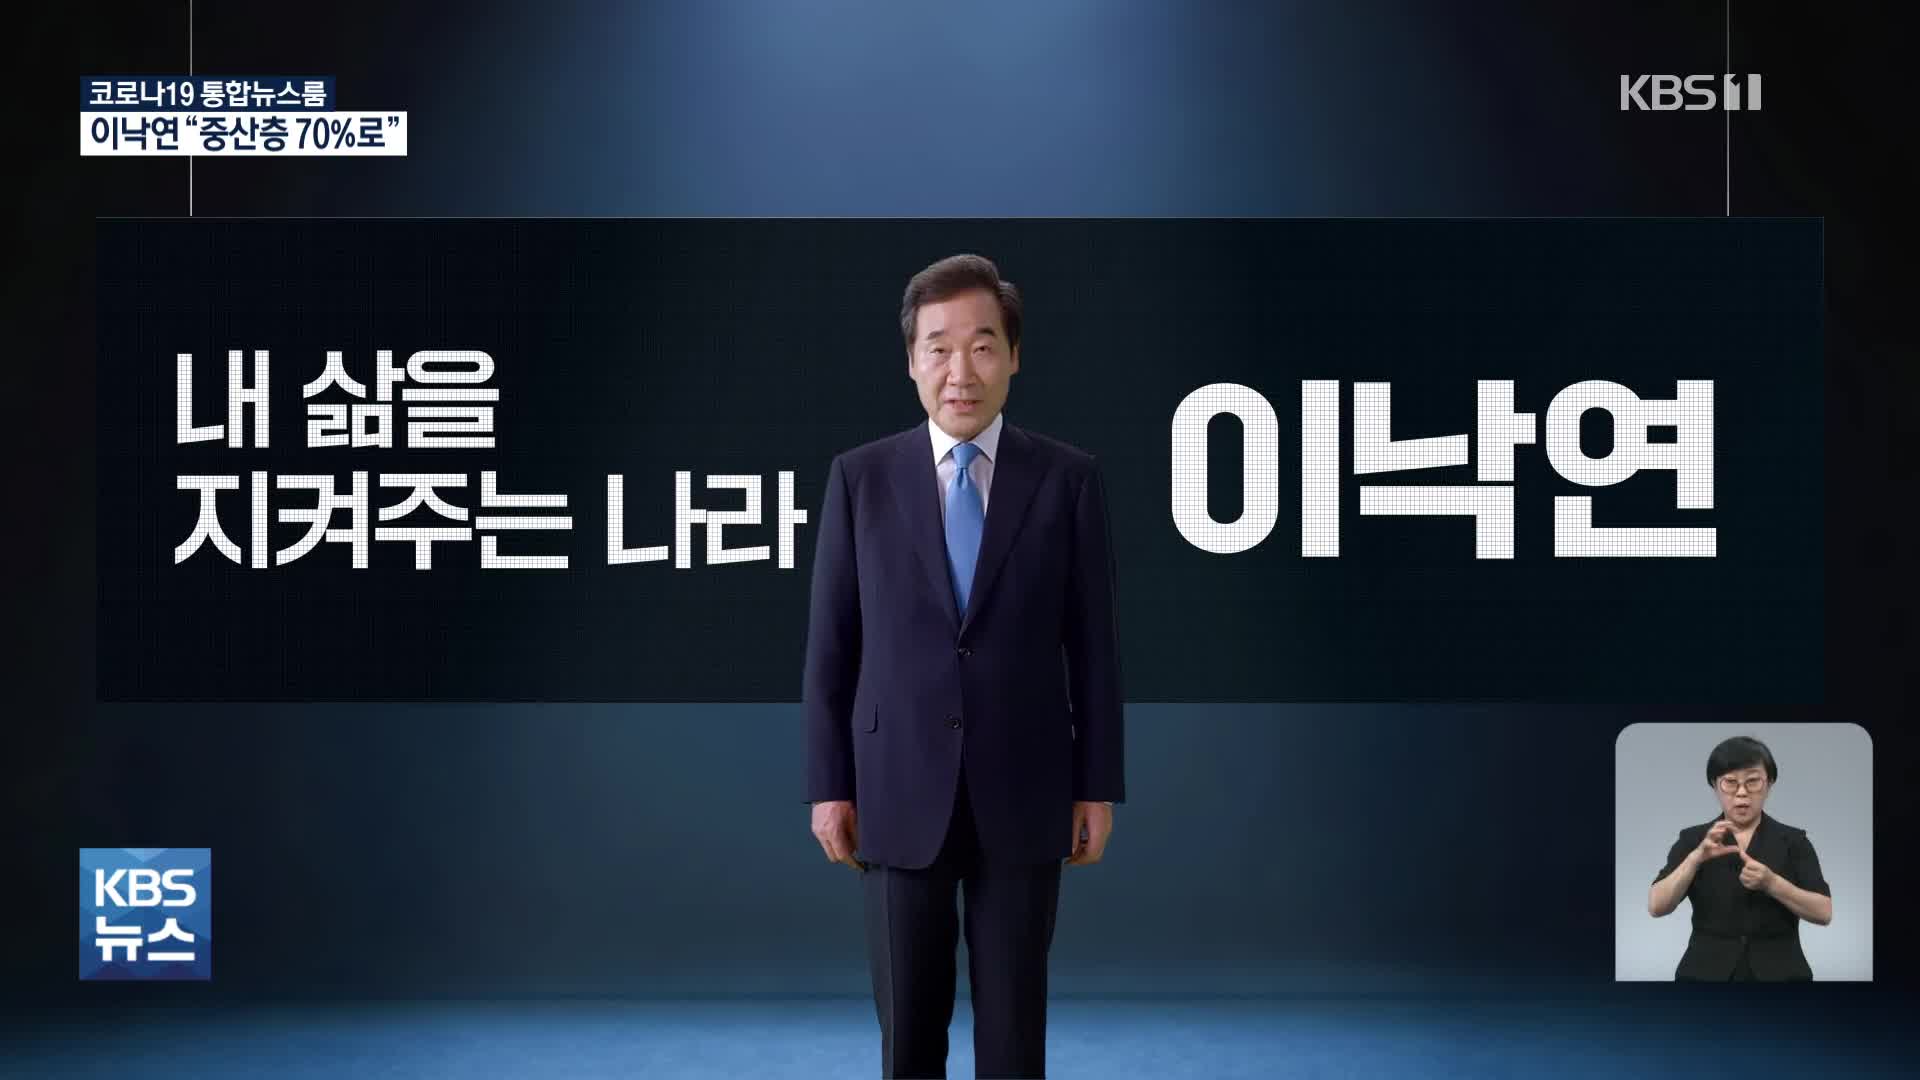 ‘신복지’ 내건 이낙연 “중산층 70% 시대 열겠다”